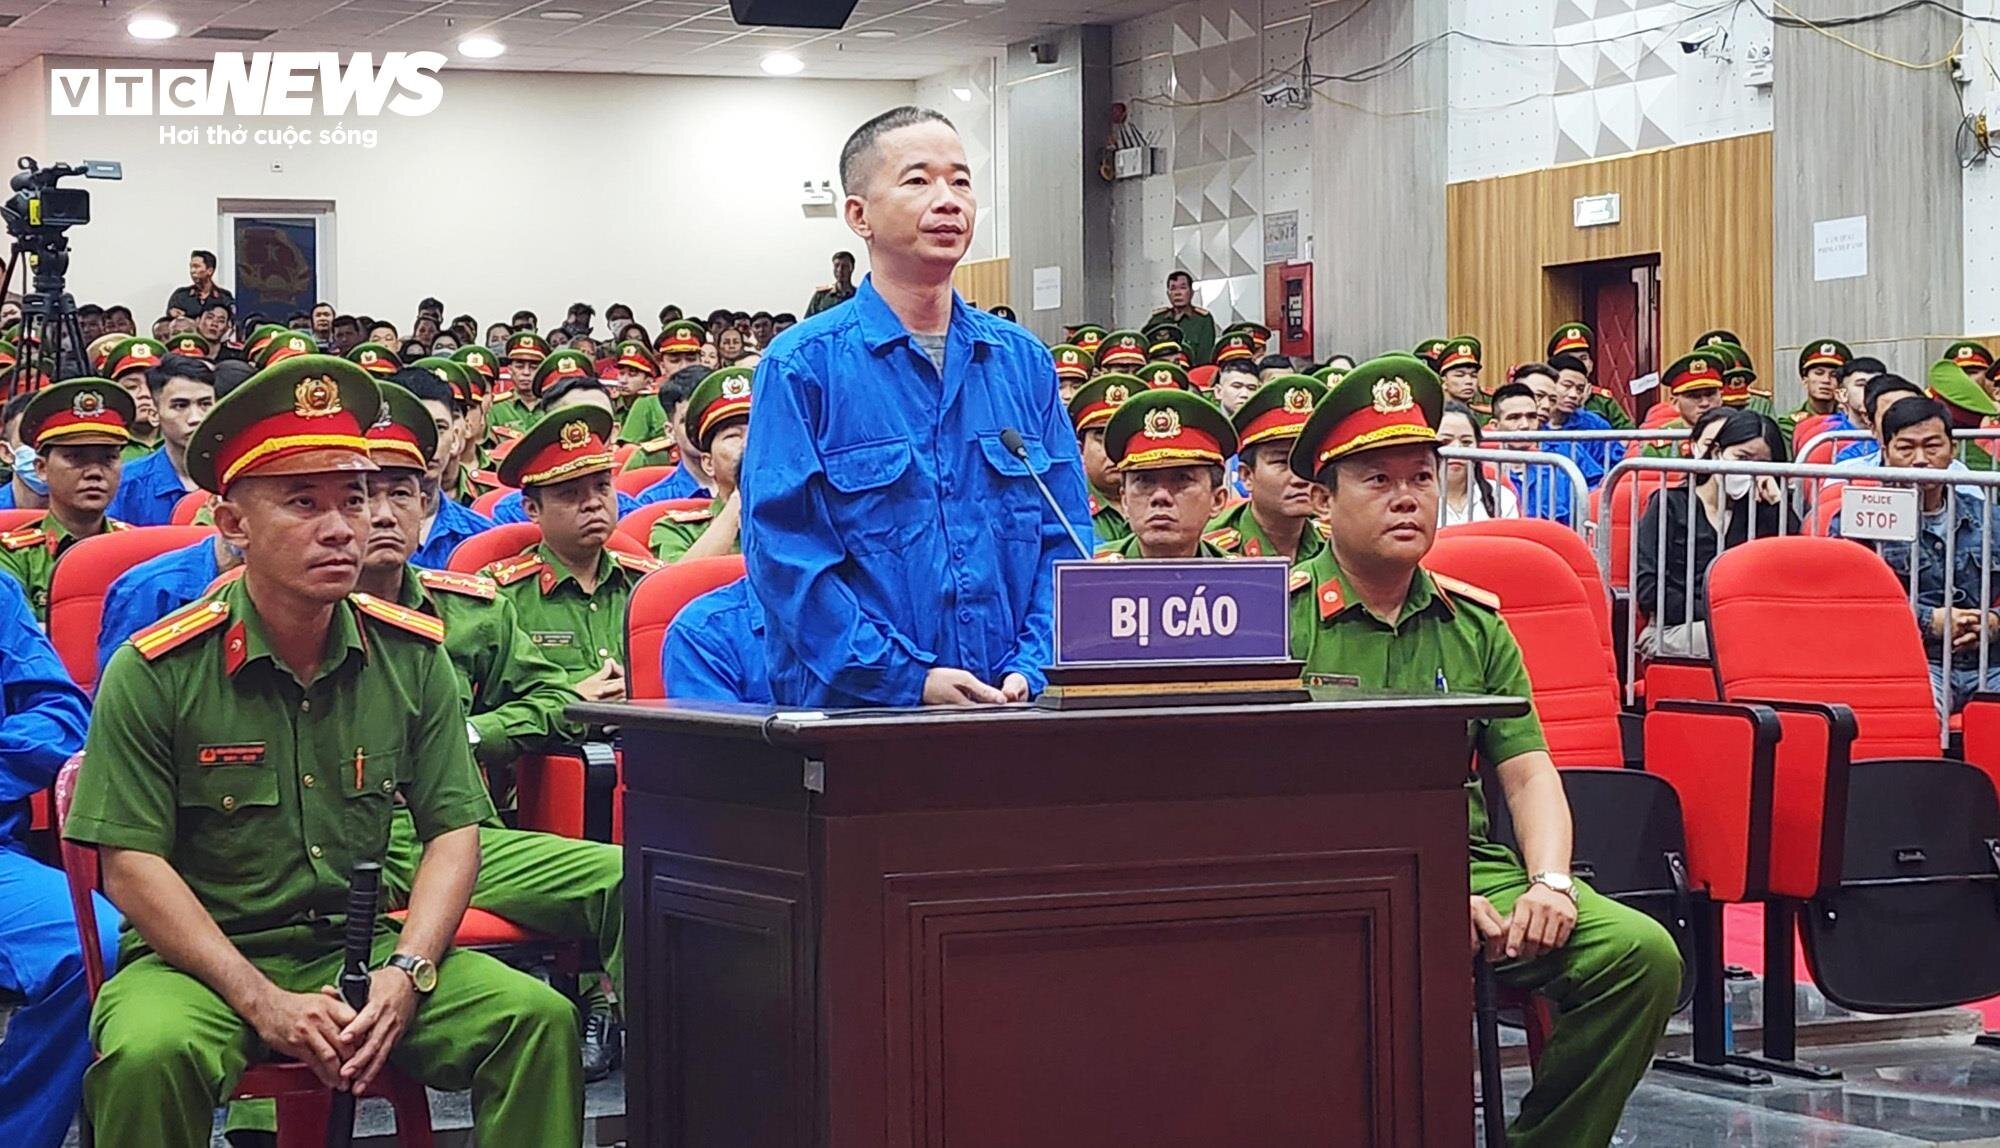 Bị cáo Nguyễn Văn Thái (Thái Bus) tại phiên toà.